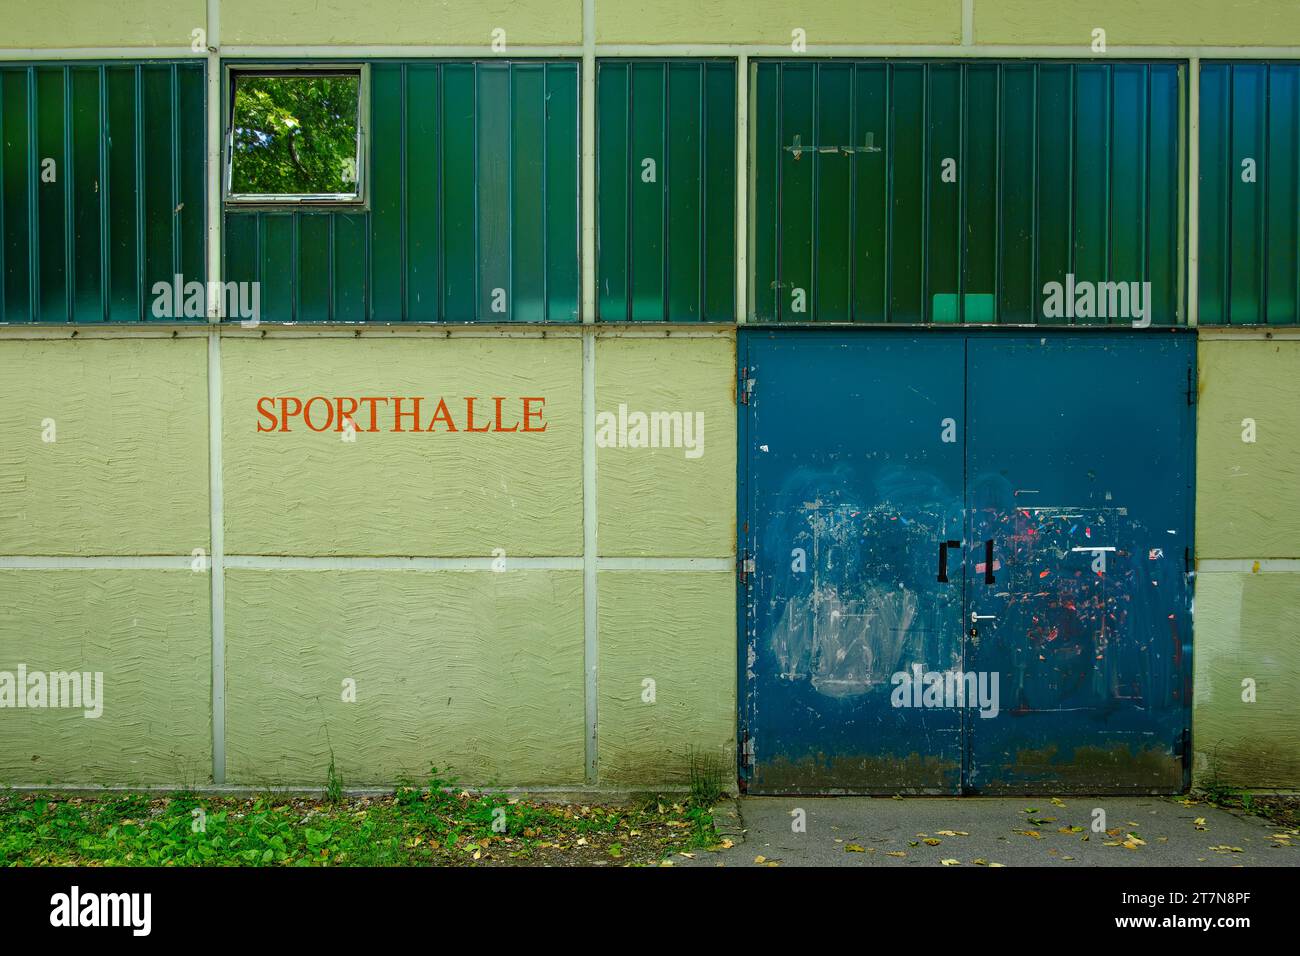 Symbolbild Sporthalle: Außenaufnahme eines Gebäudes mit der Aufschrift SPORTHALLE. Stock Photo